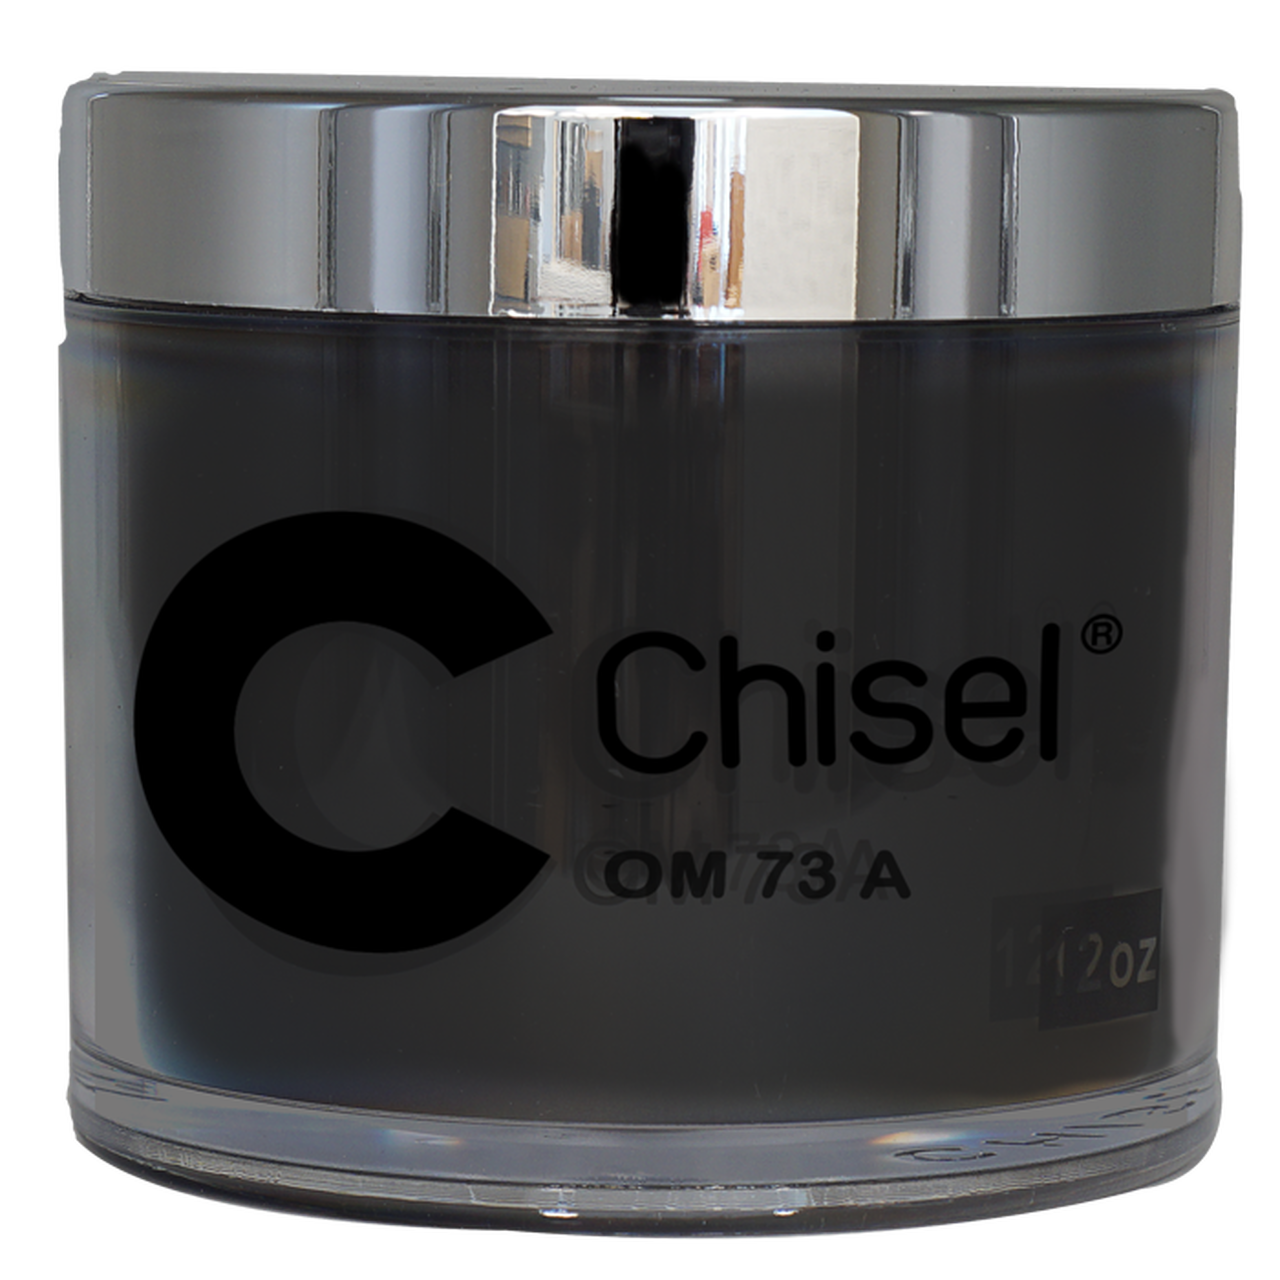 Chisel Nail Art Dipping/Acrílico 2 en 1 Polvo - 12oz NEGRO (OM73A) Tamaño de recambio